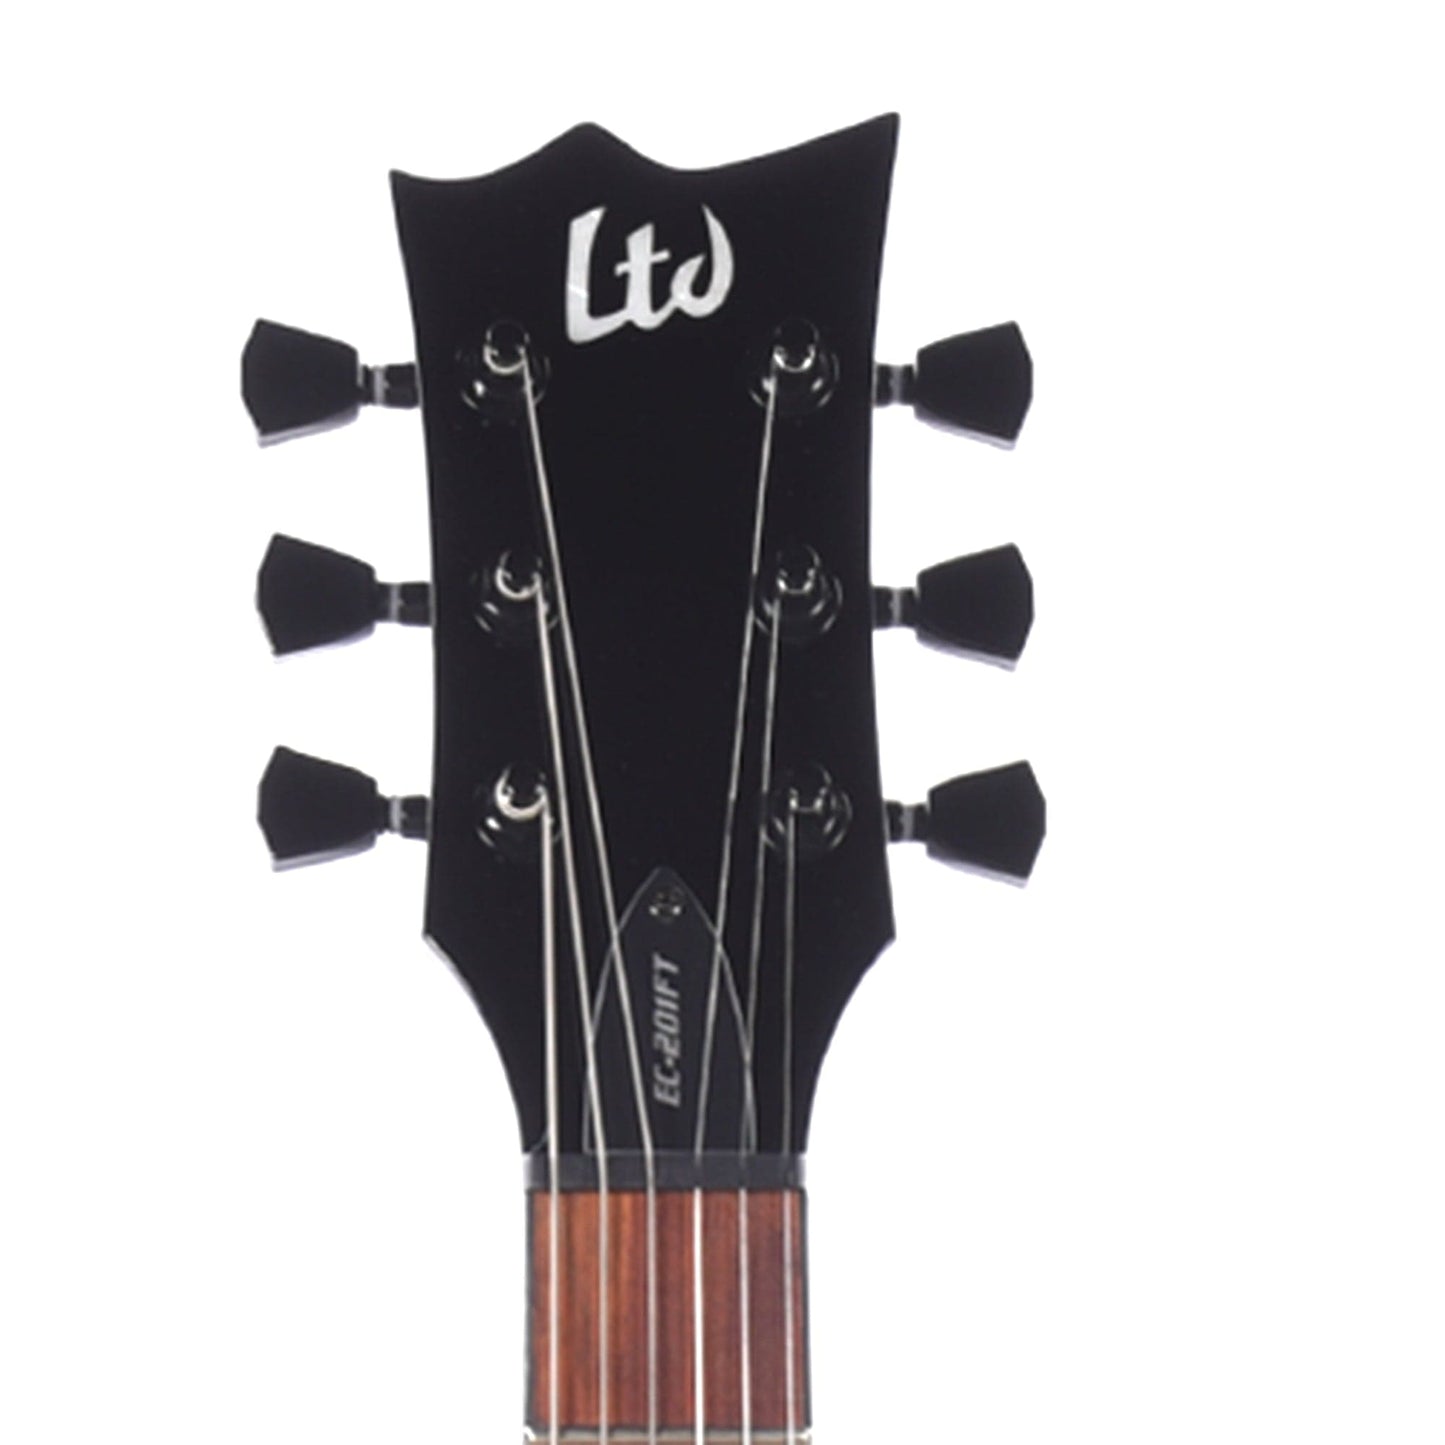 ESP LTD EC-201 FT Black Electric Guitars / Solid Body